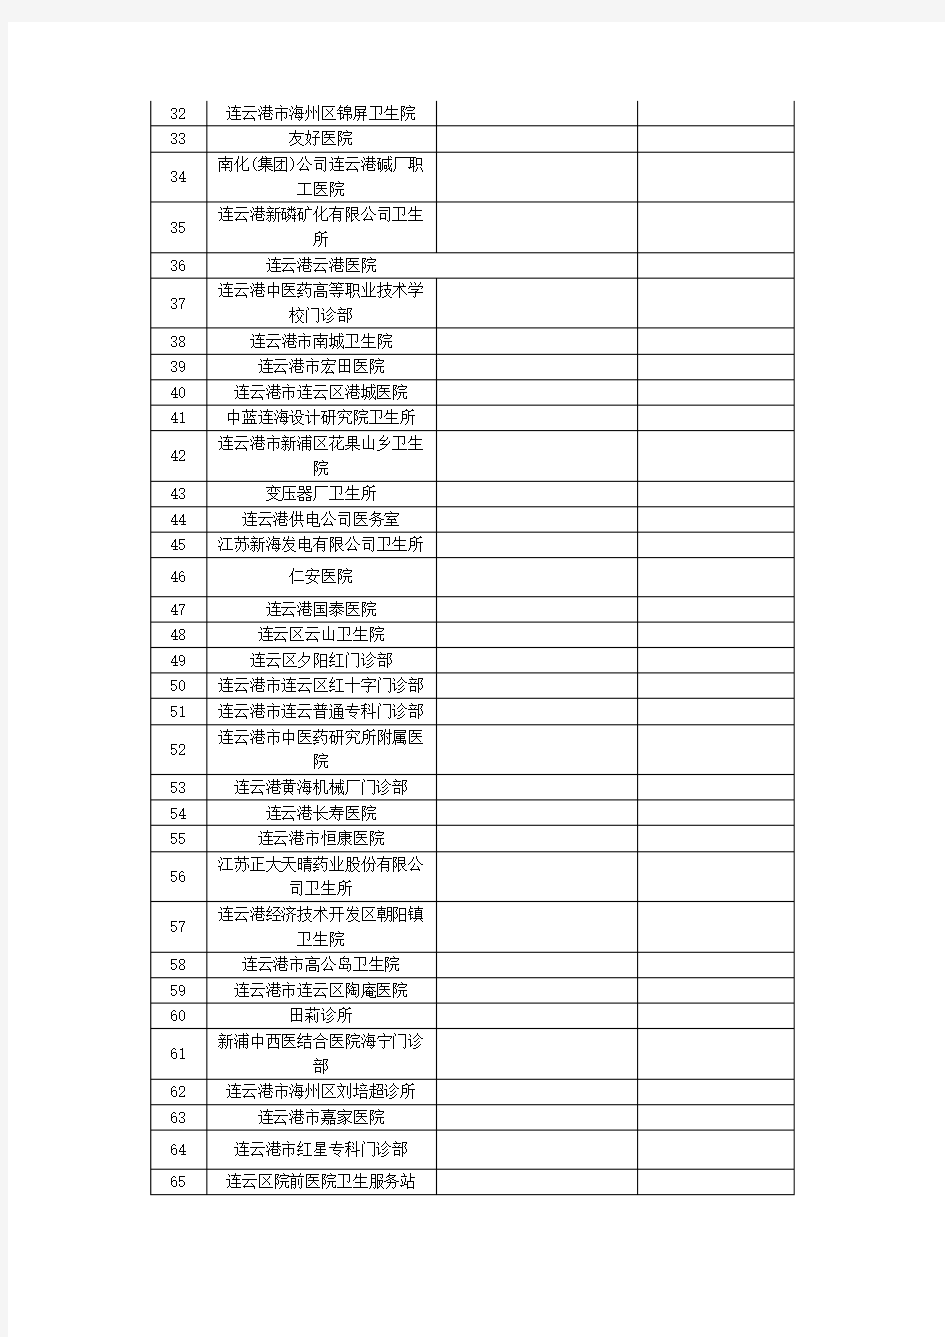 连云港所有医疗单位名单